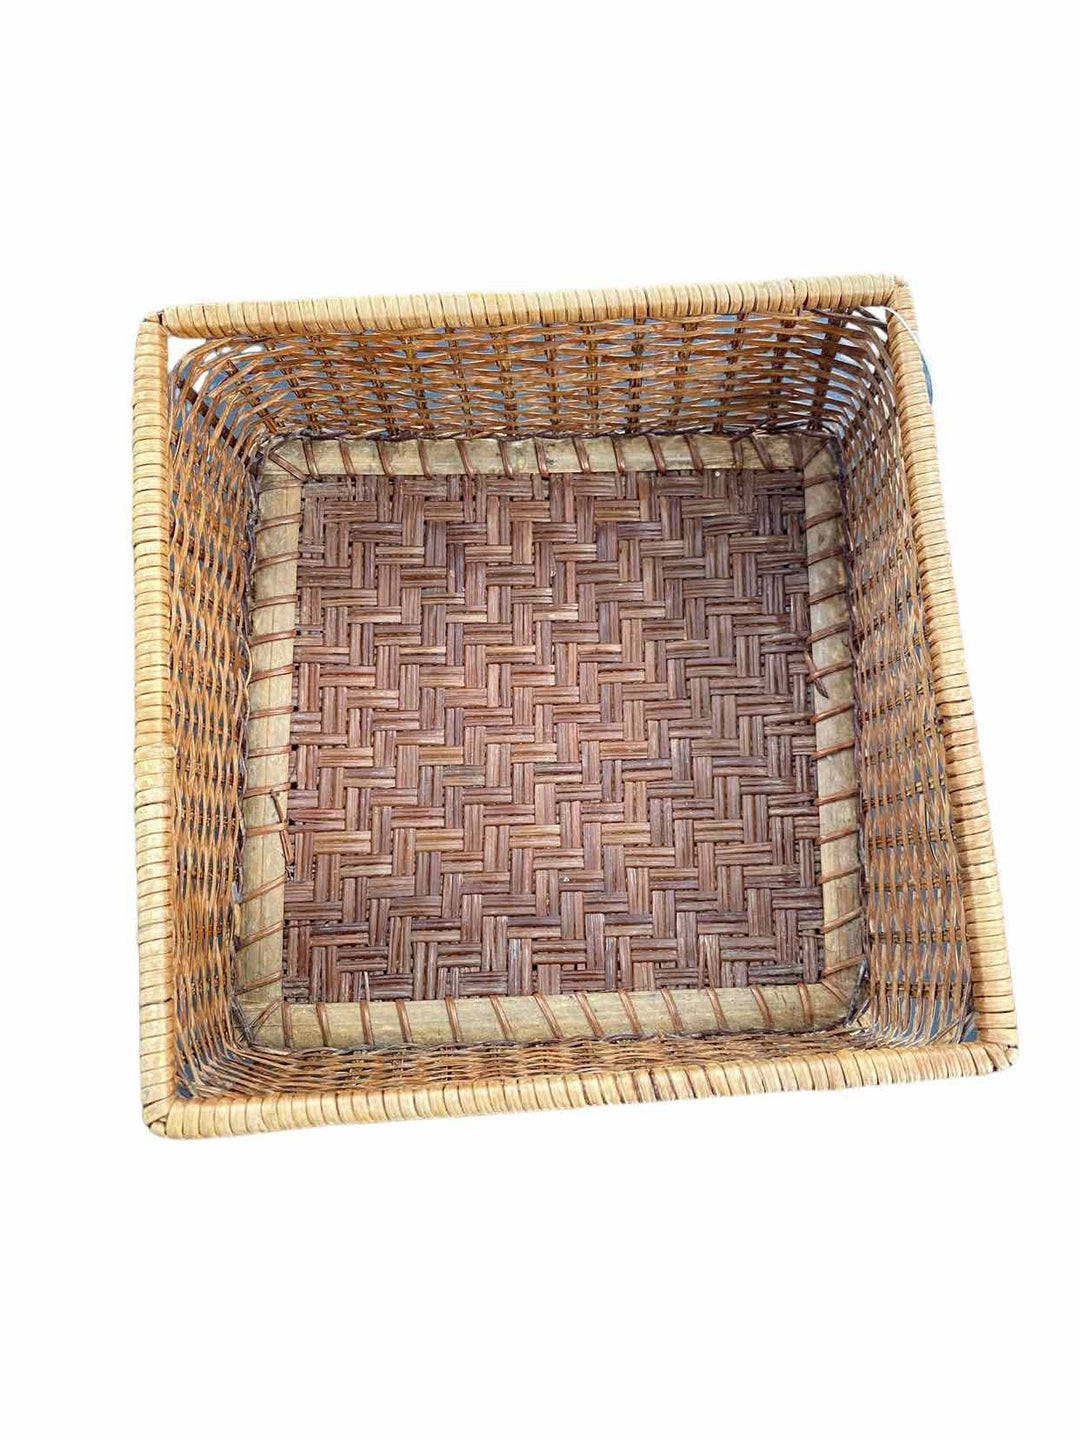 Basket Home Decor